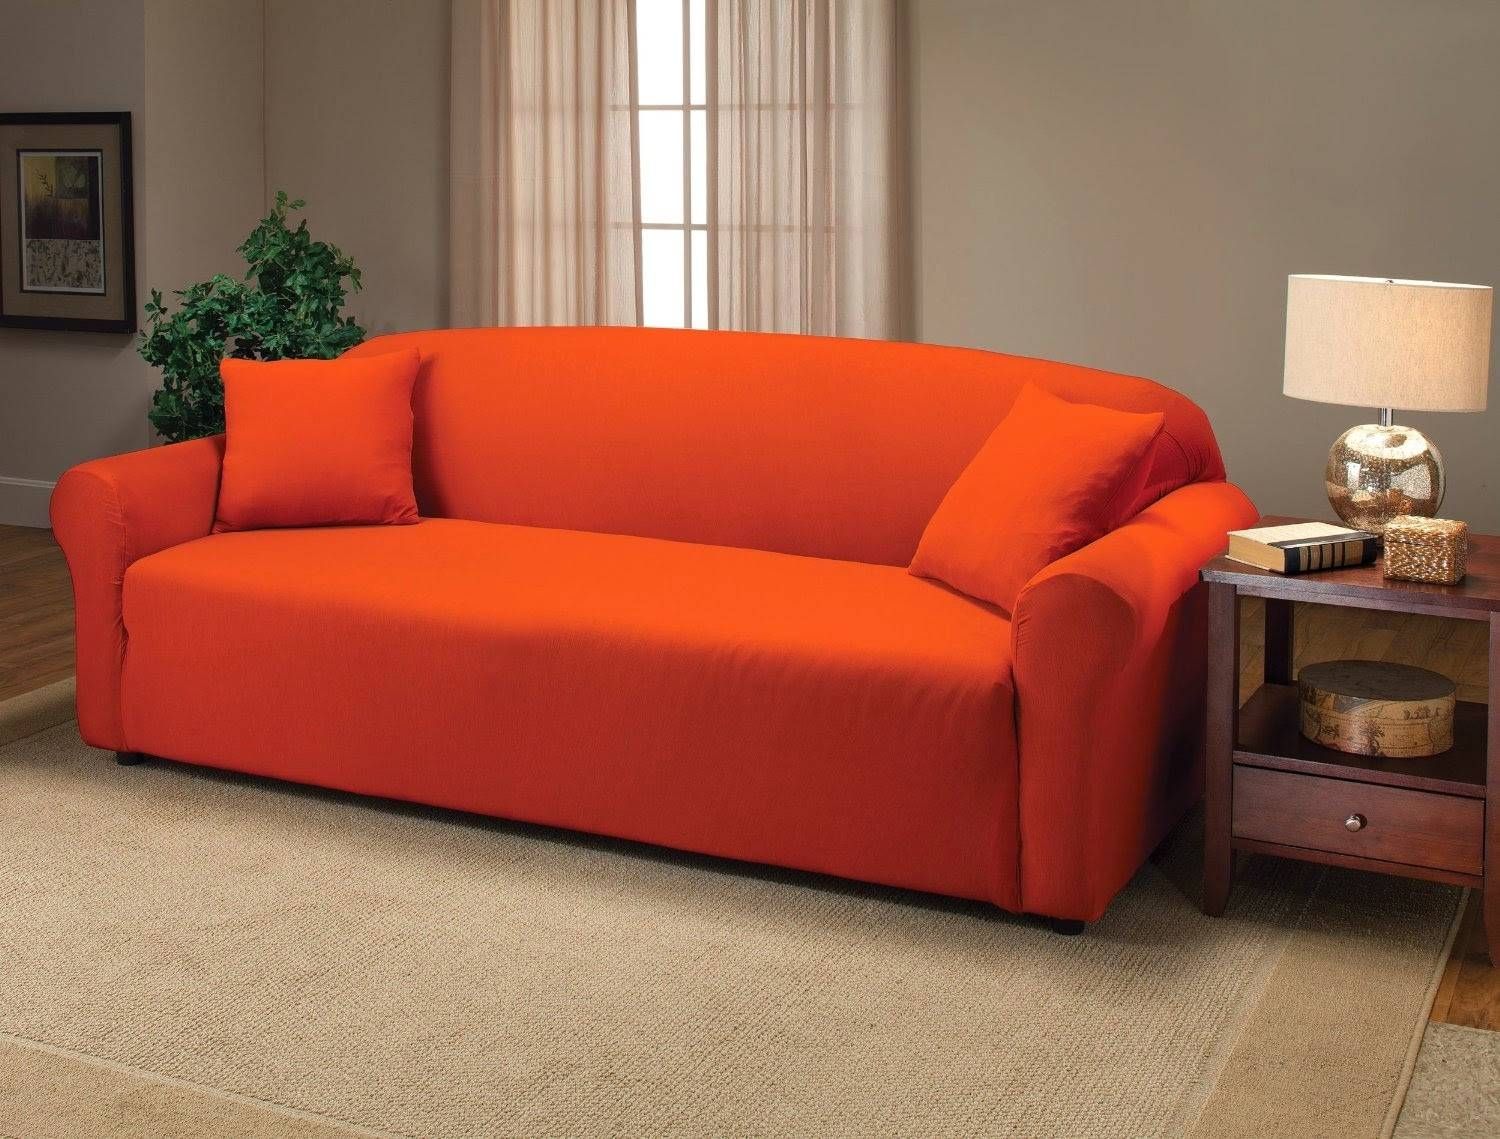 Orange Sofas 17 With Orange Sofas | Jinanhongyu With Regard To Burnt Orange Sofas (View 8 of 15)